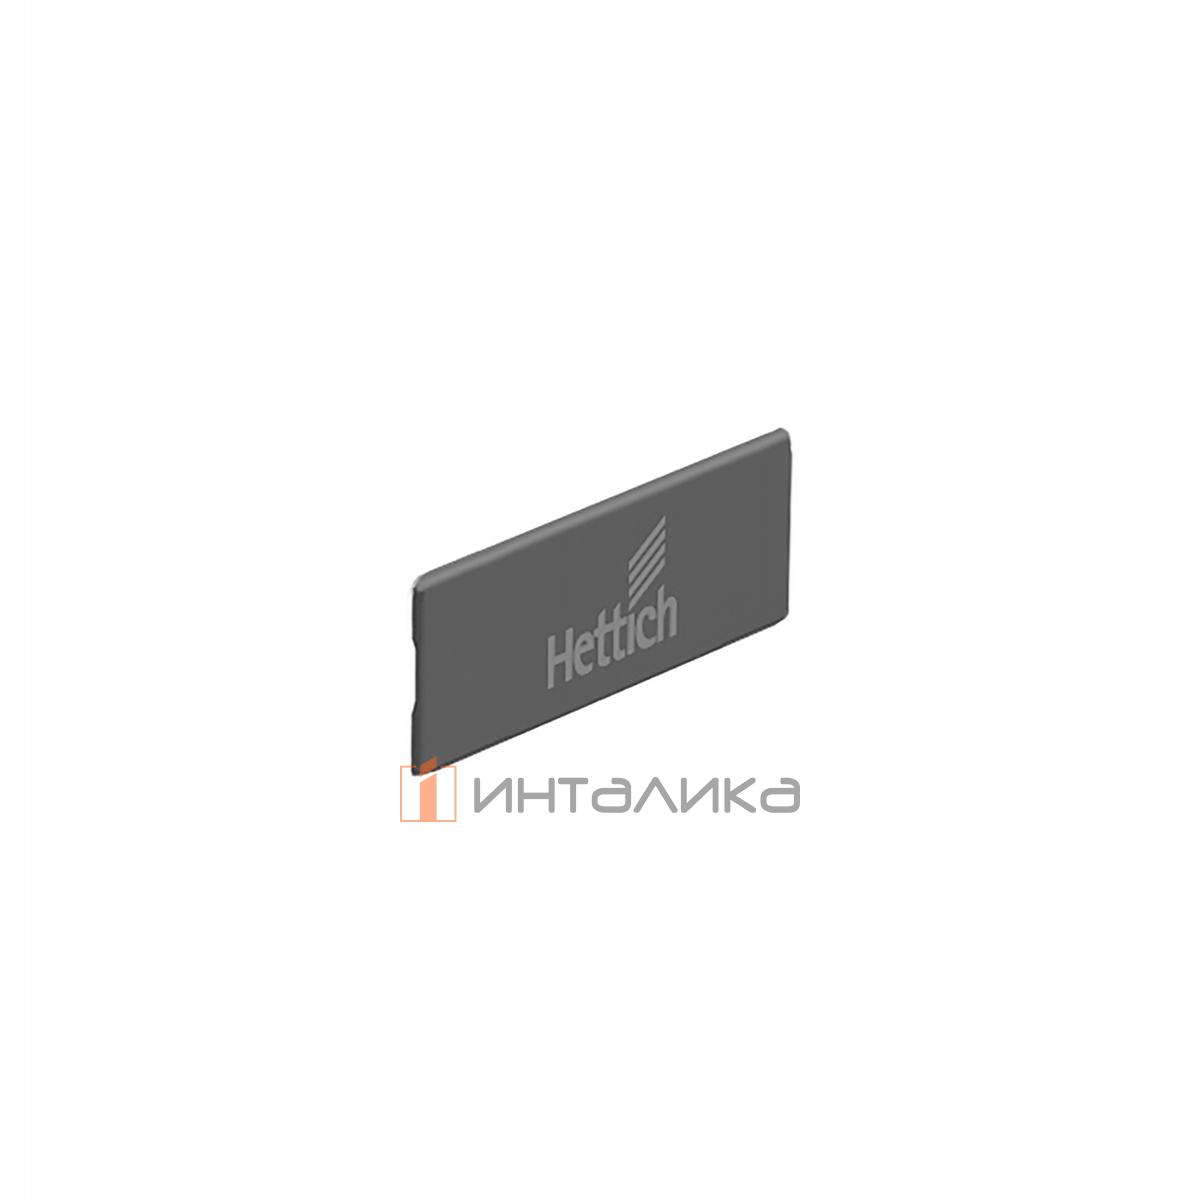 Заглушка для ящика HETTICH InnoTech Atira с лого Hettich, пластик, пластик, антрацит, (V300)